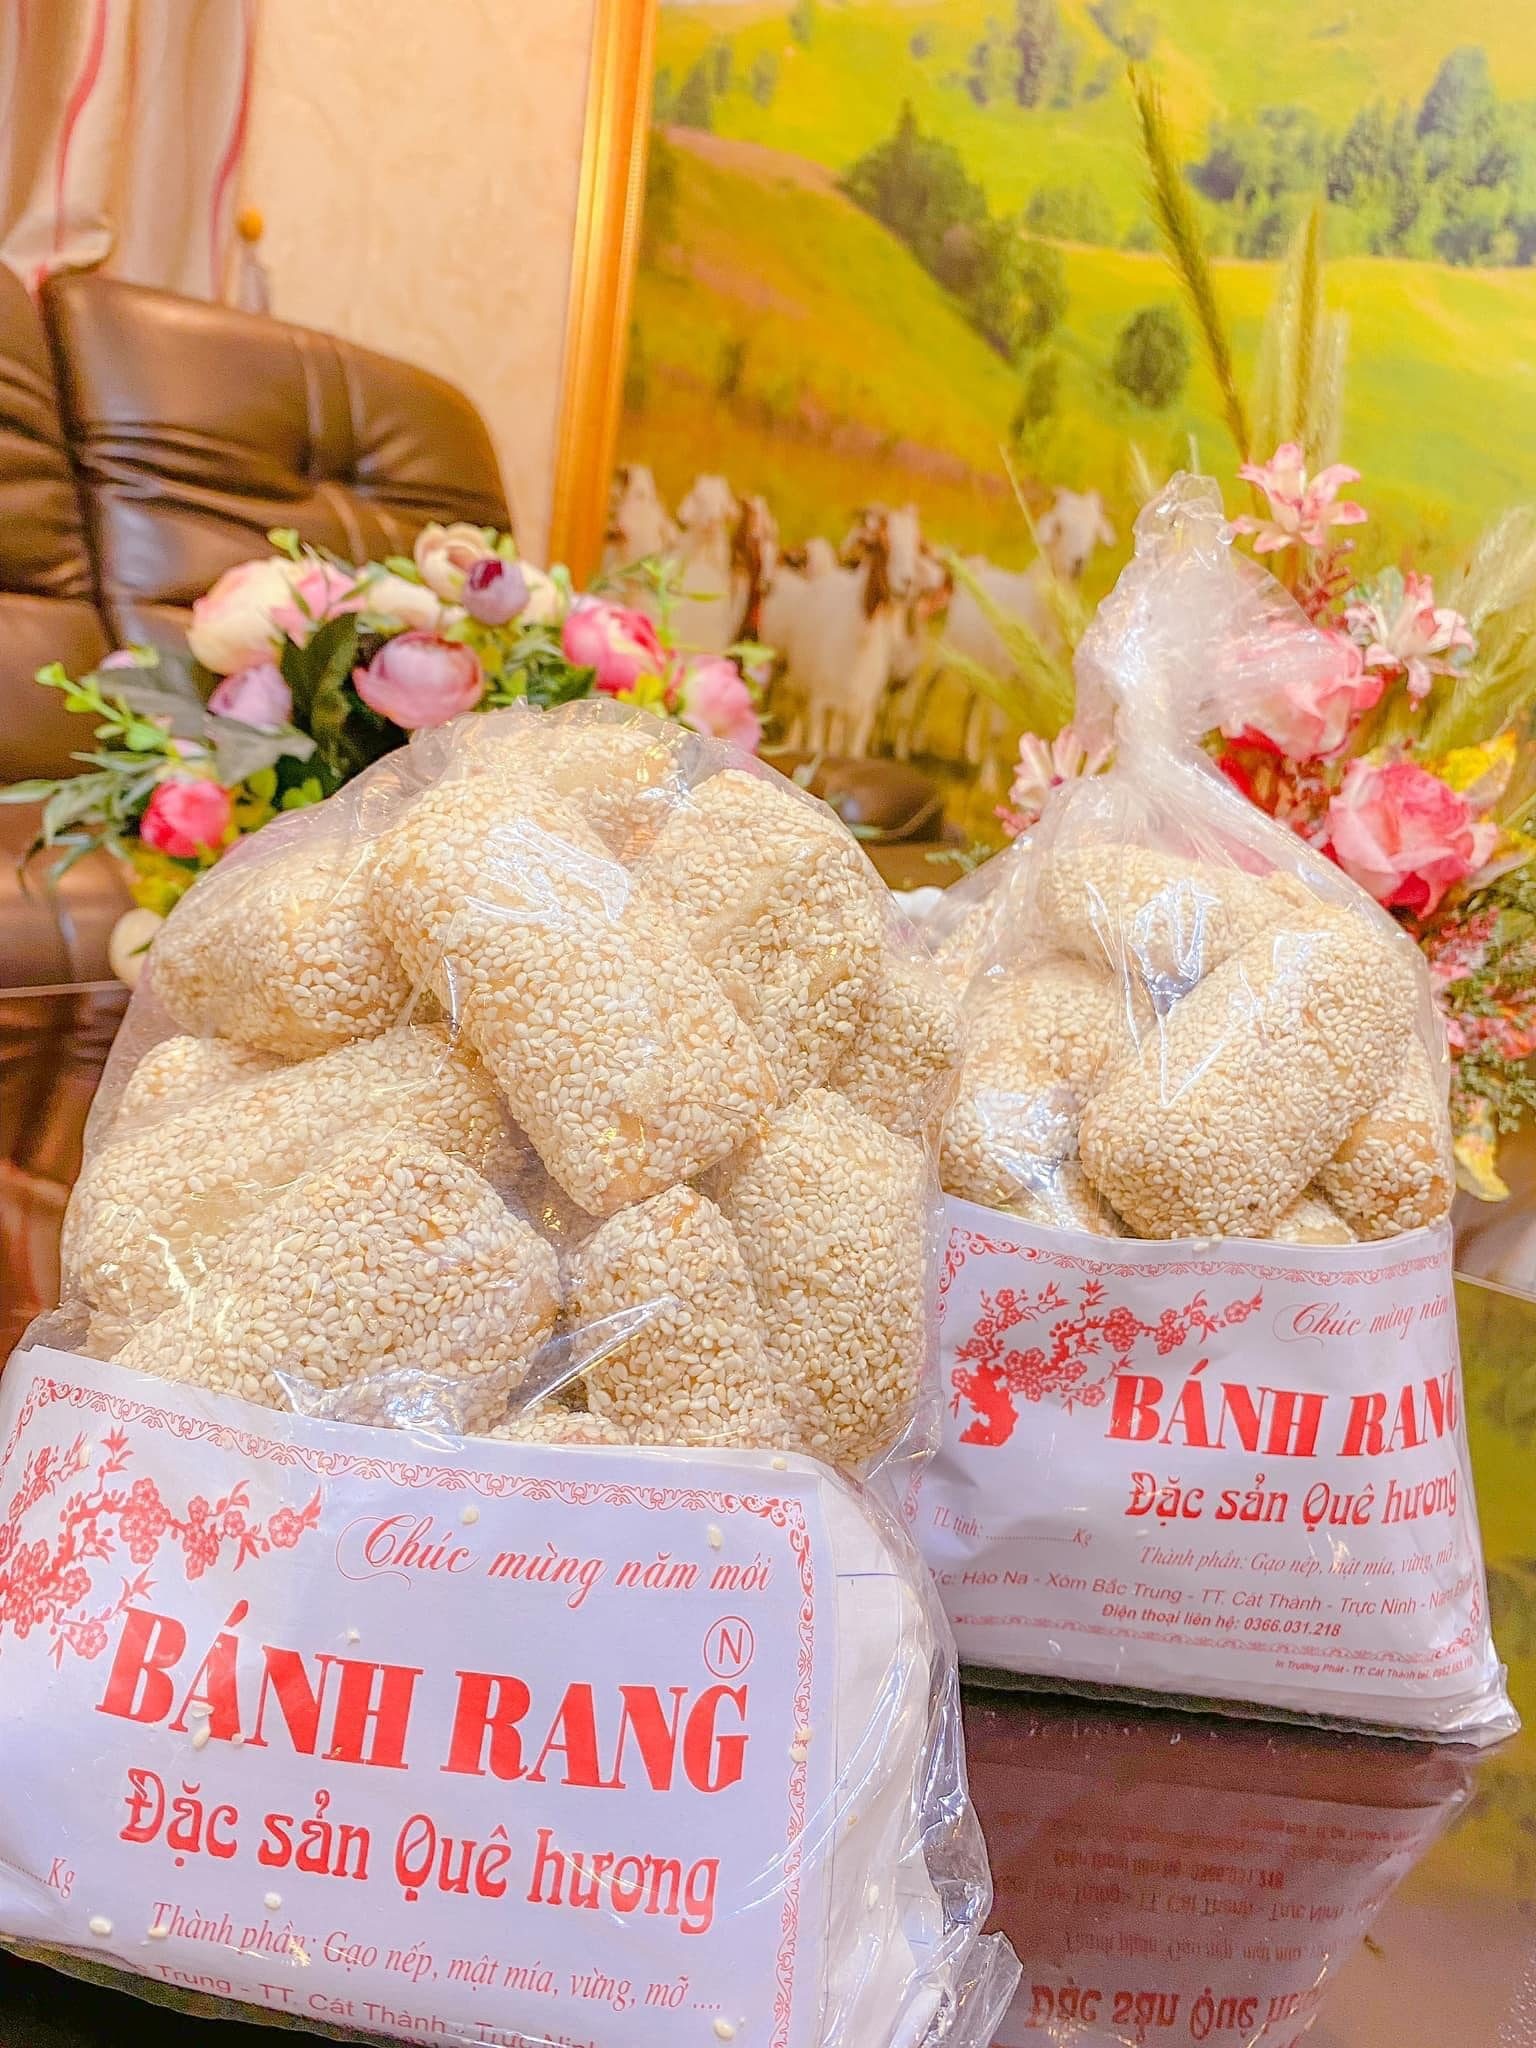 Hồn quê Nam Định trong hương vị bánh rang Cát Thành